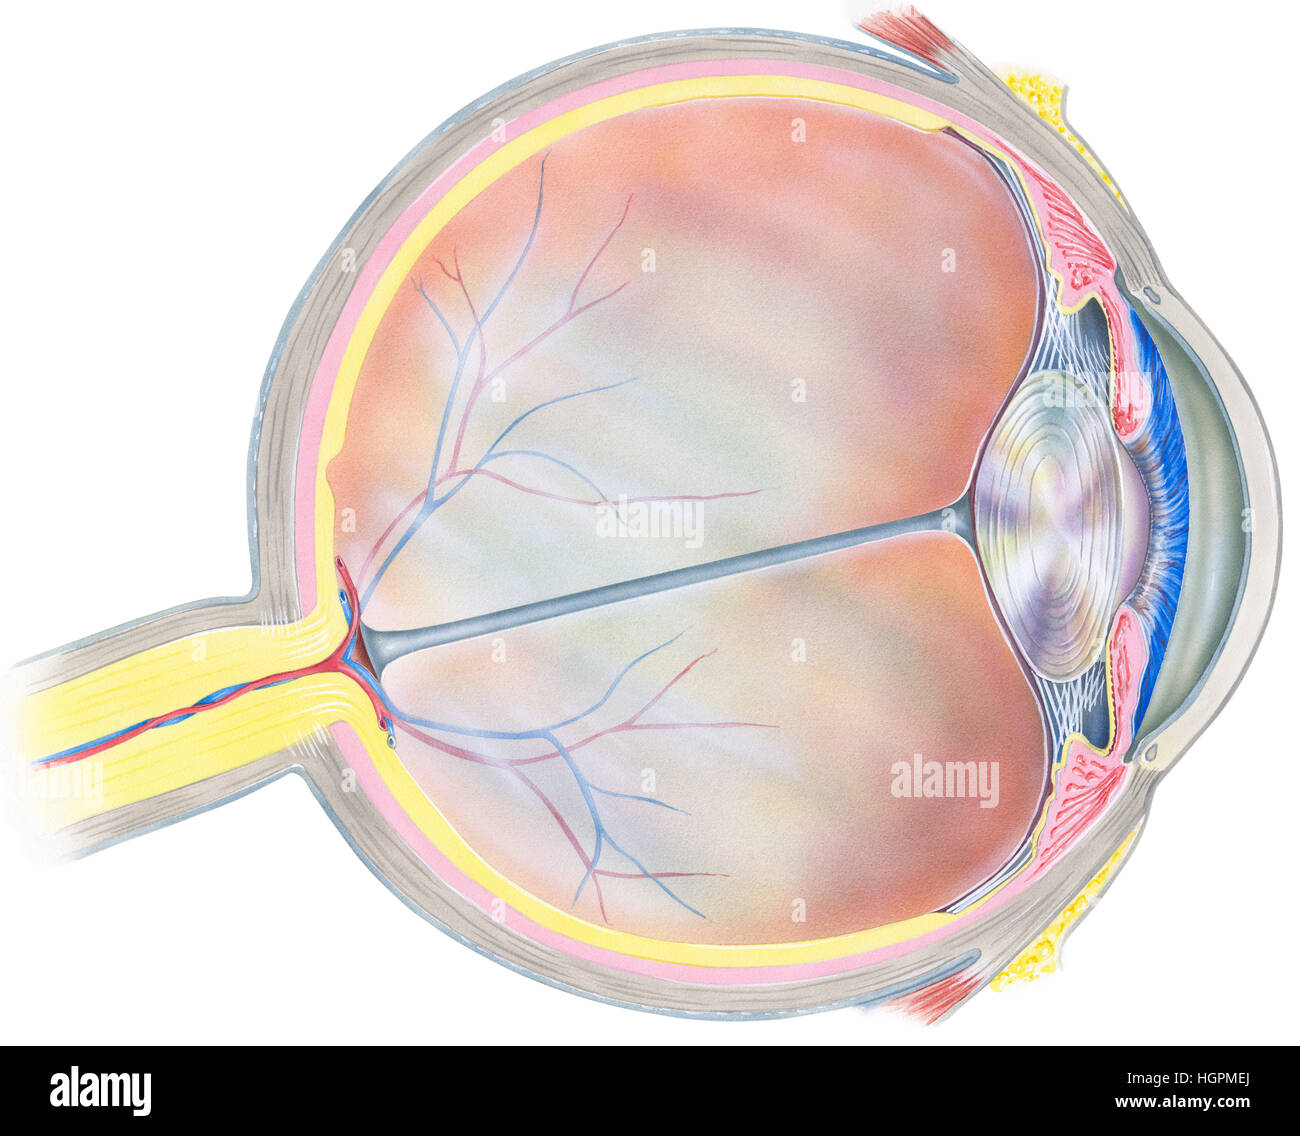 Un bulbo oculare umana vista in sezione trasversale che mostra le seguenti strutture: iris, anteriore membrana limitante posteriore, membrana limitante, tendine laterali di rectu Foto Stock